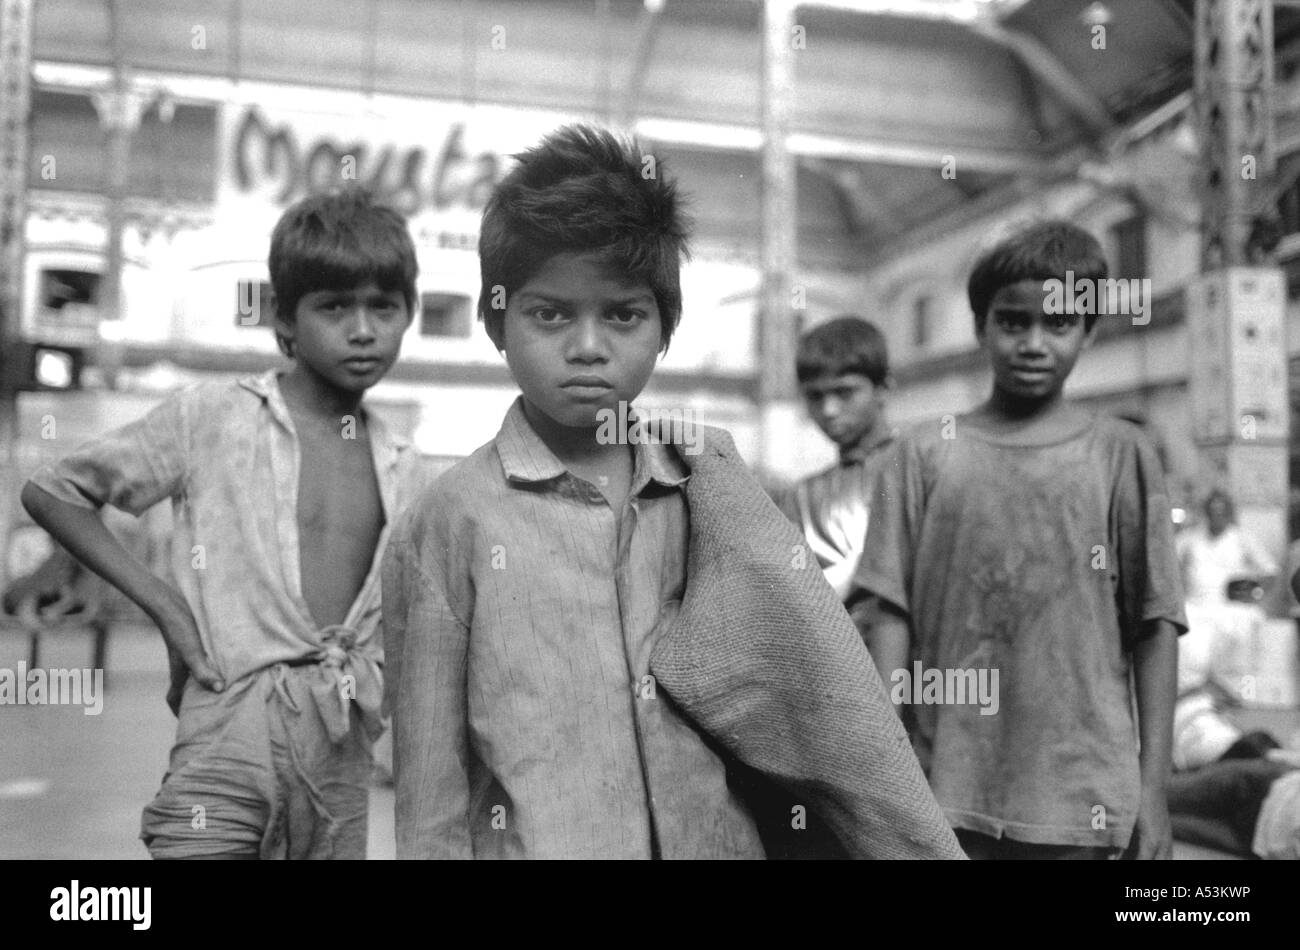 Painet ha1324 124 in bianco e nero di bambini di strada stazione ferroviaria di Howrah calcutta india paese nazione in via di sviluppo Foto Stock